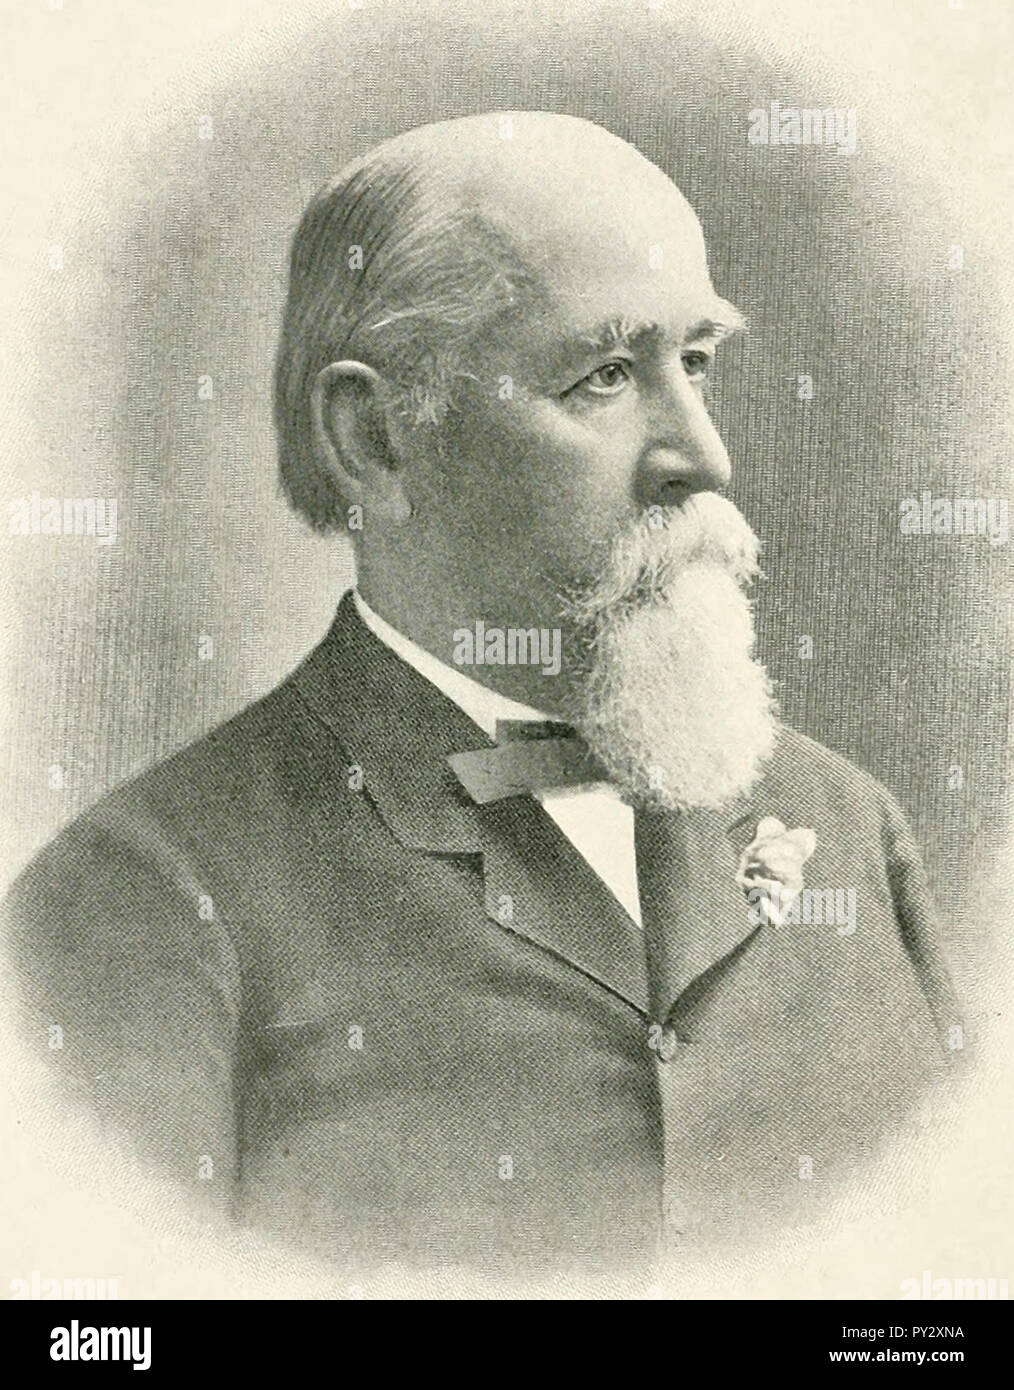 Portrait de Charles Eugene Flandrau, avocat américain qui a servi sur la Cour suprême du Minnesota. Il était aussi un colonel dans l'Armée de l'Union, vers 1900 Banque D'Images